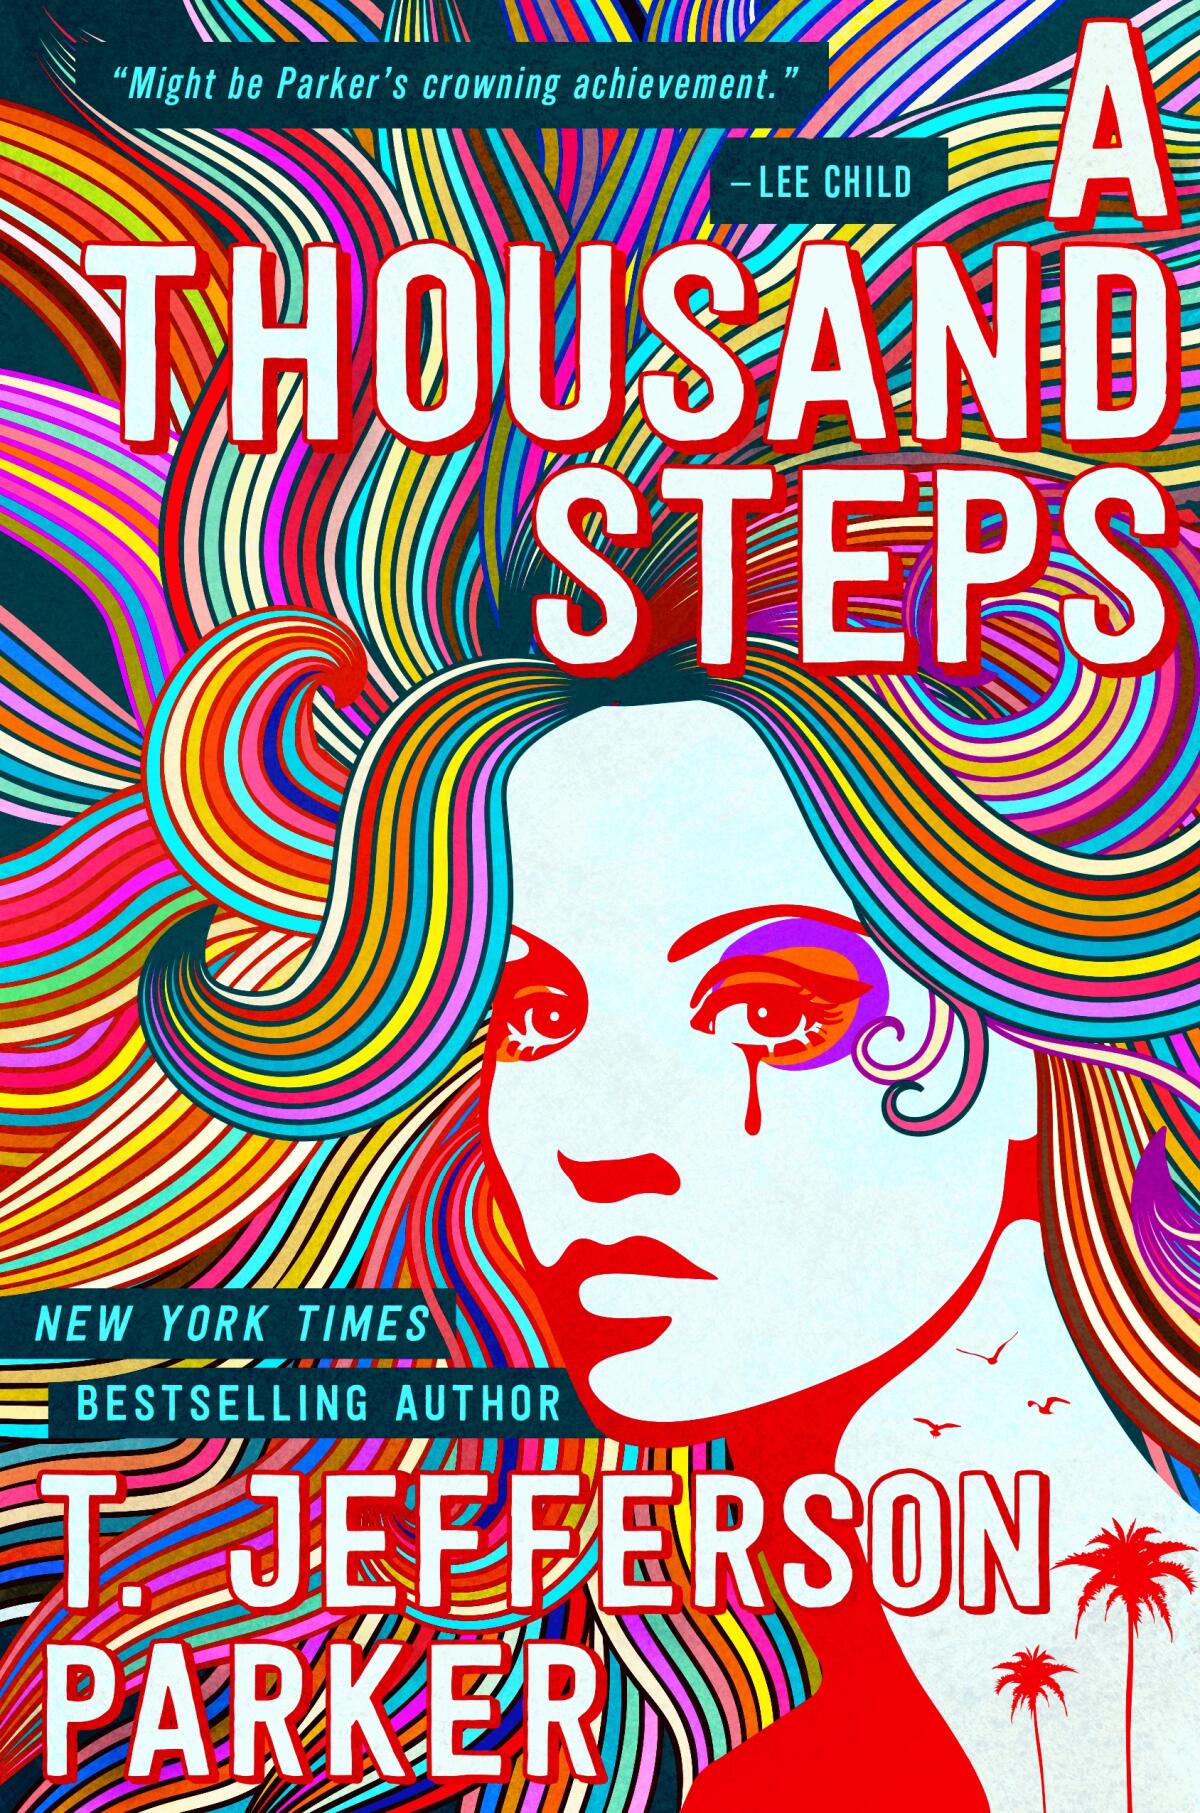 "A Thousand Steps," by T. Jefferson Parker